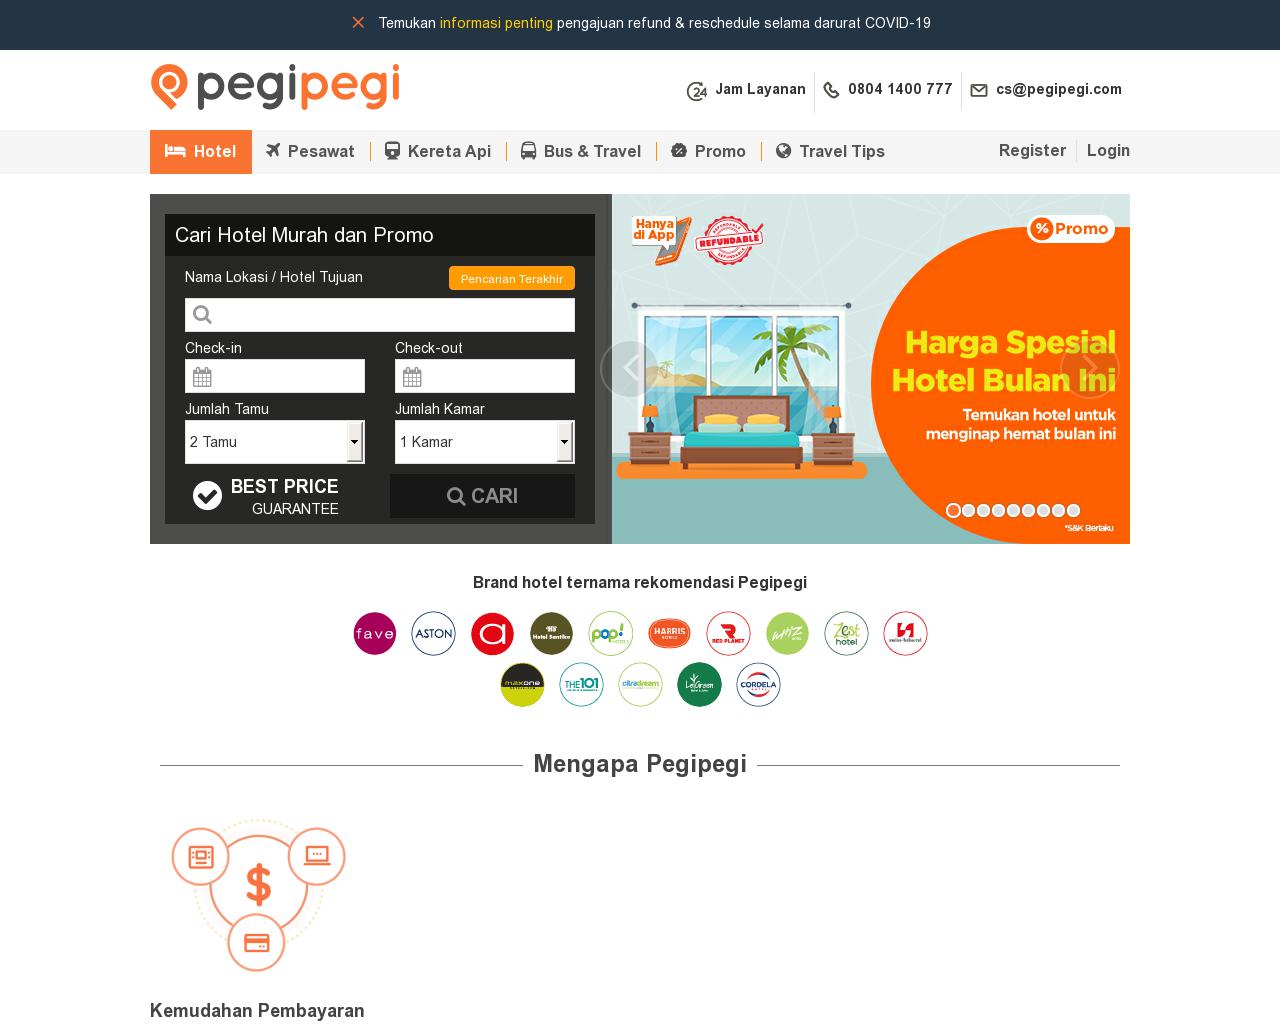 pegipegi.com